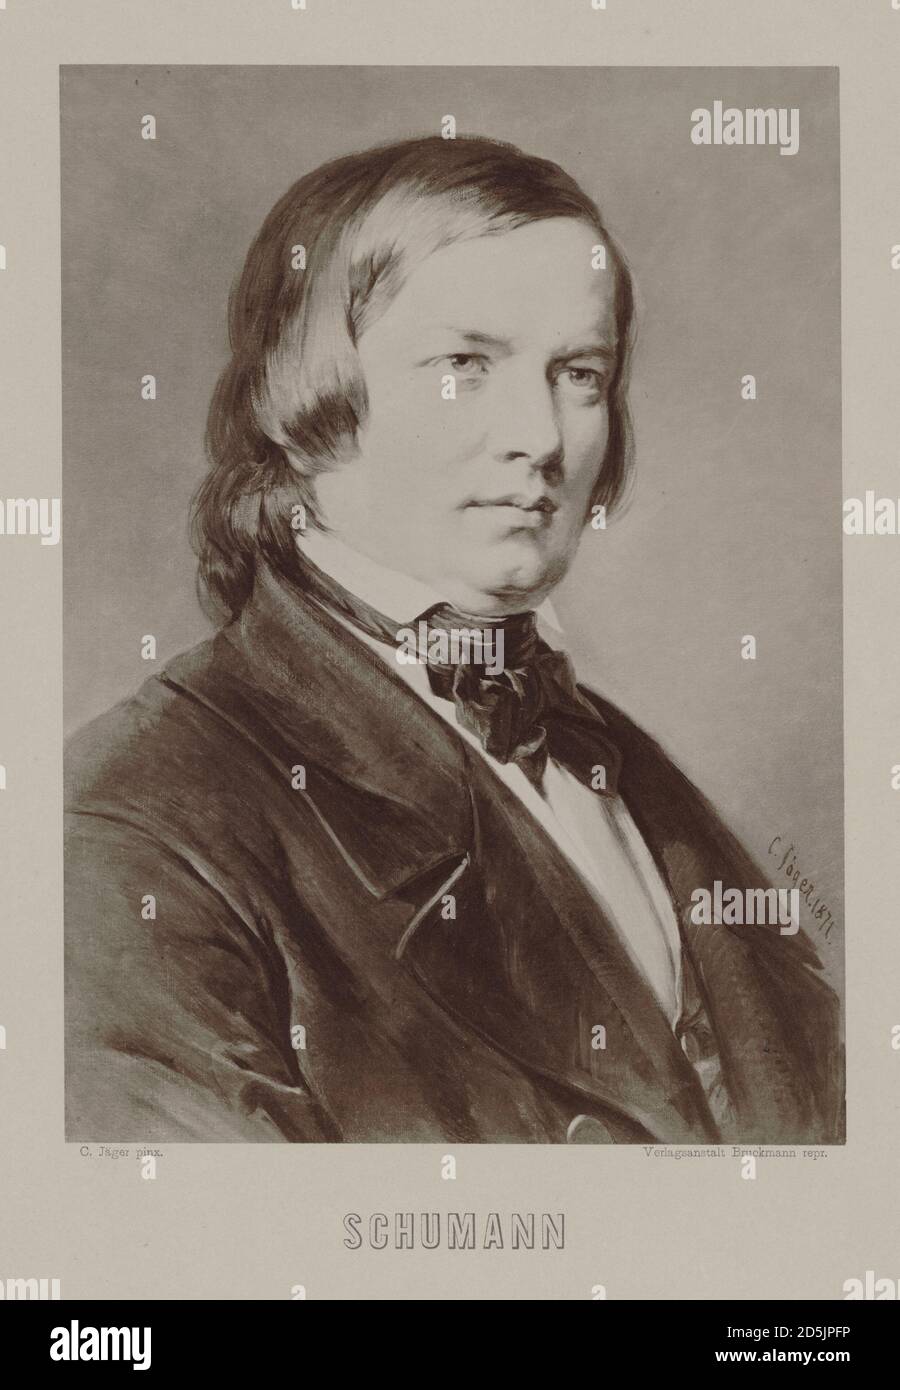 Robert Schumann (1810 – 1856) war ein deutscher Komponist, Pianist und einflussreicher Musikkritiker. Er gilt weithin als einer der größten Komponisten von Stockfoto